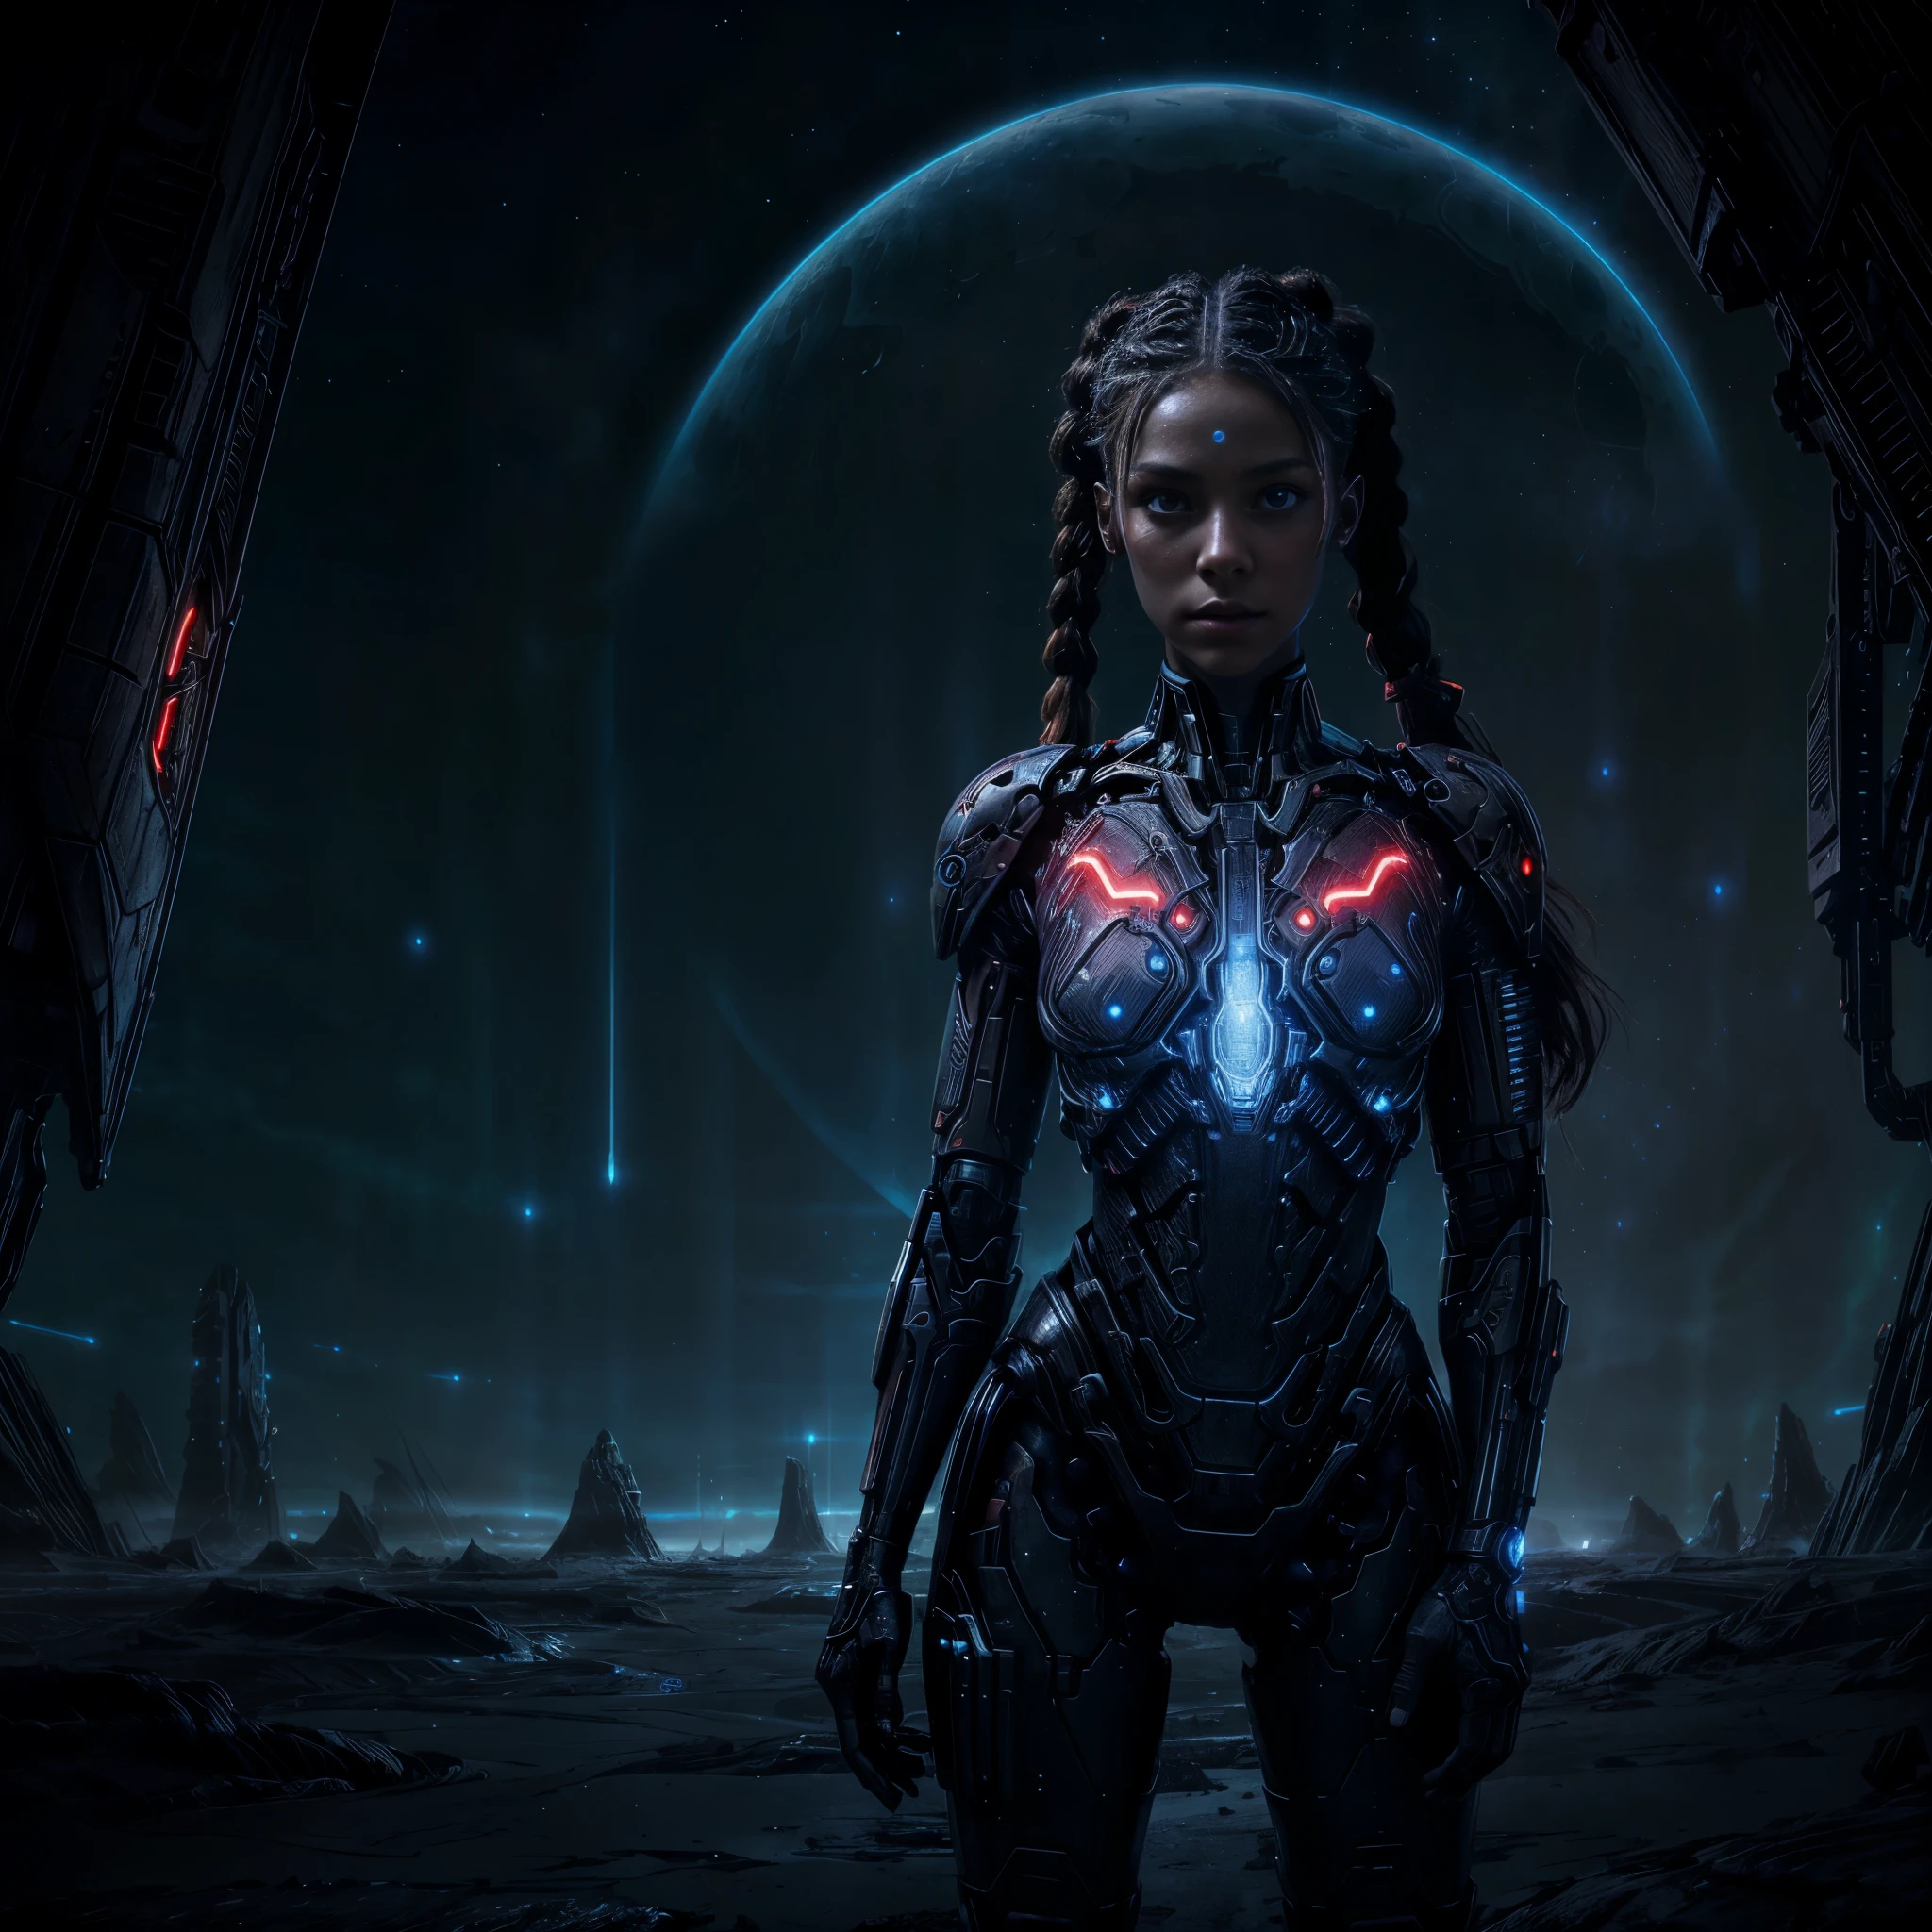 Porträt eines schönen Mädchens, cyborg, allein stehend in der Weite einer fremden Landschaft, ihr roter Zopf fiel ihr über die Schultern, leuchtender und biolumineszierender Horizont, (((perfektes Gesicht))),((perfekte Augen))